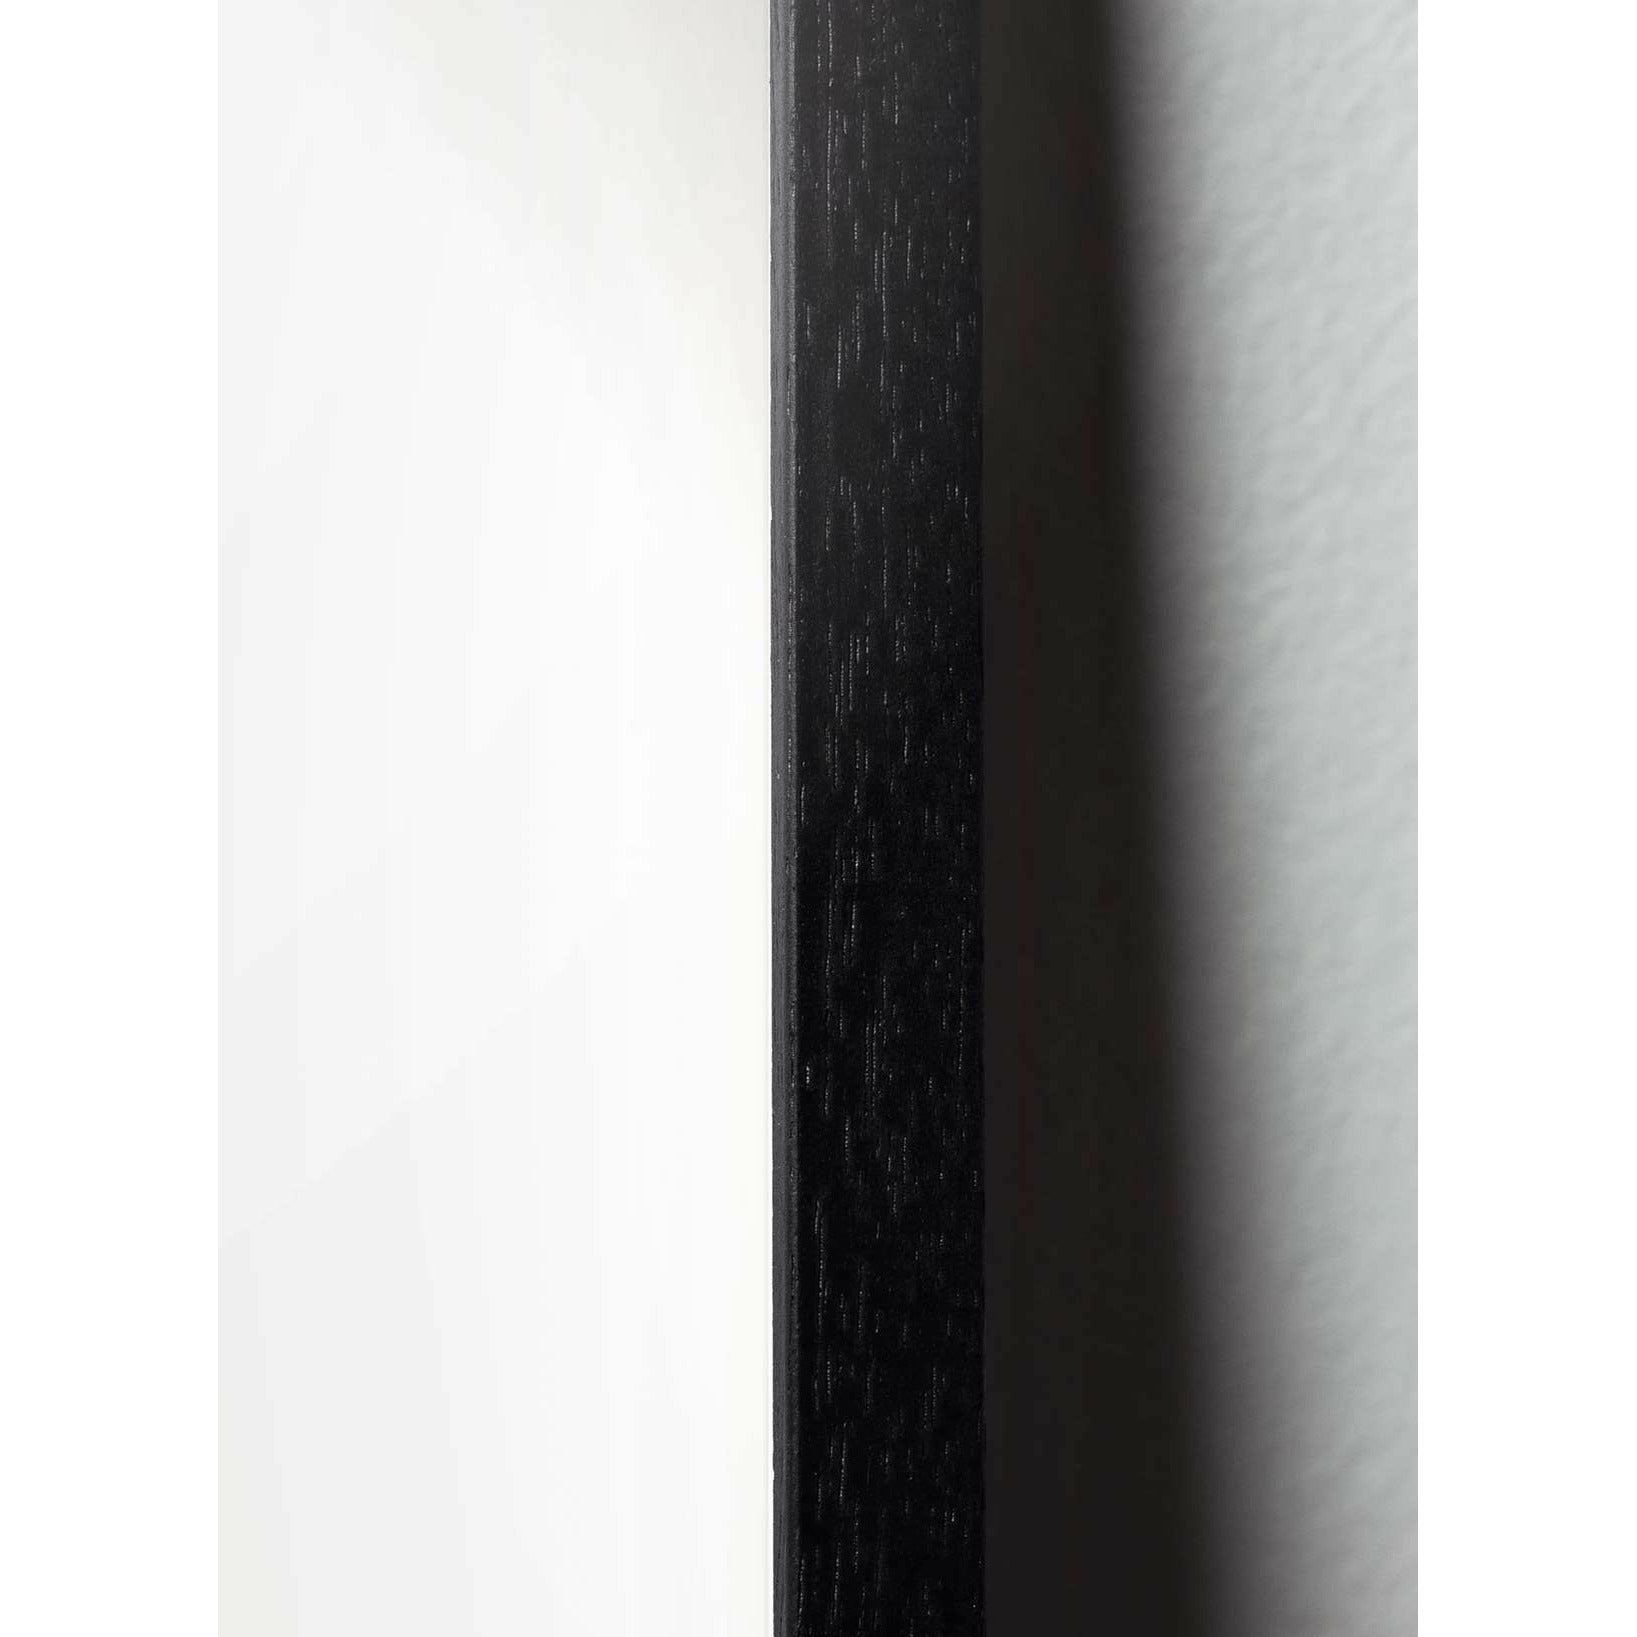 Brainchild Släppa Line Affisch, ram i svart lackerat trä 30x40 cm, vit bakgrund